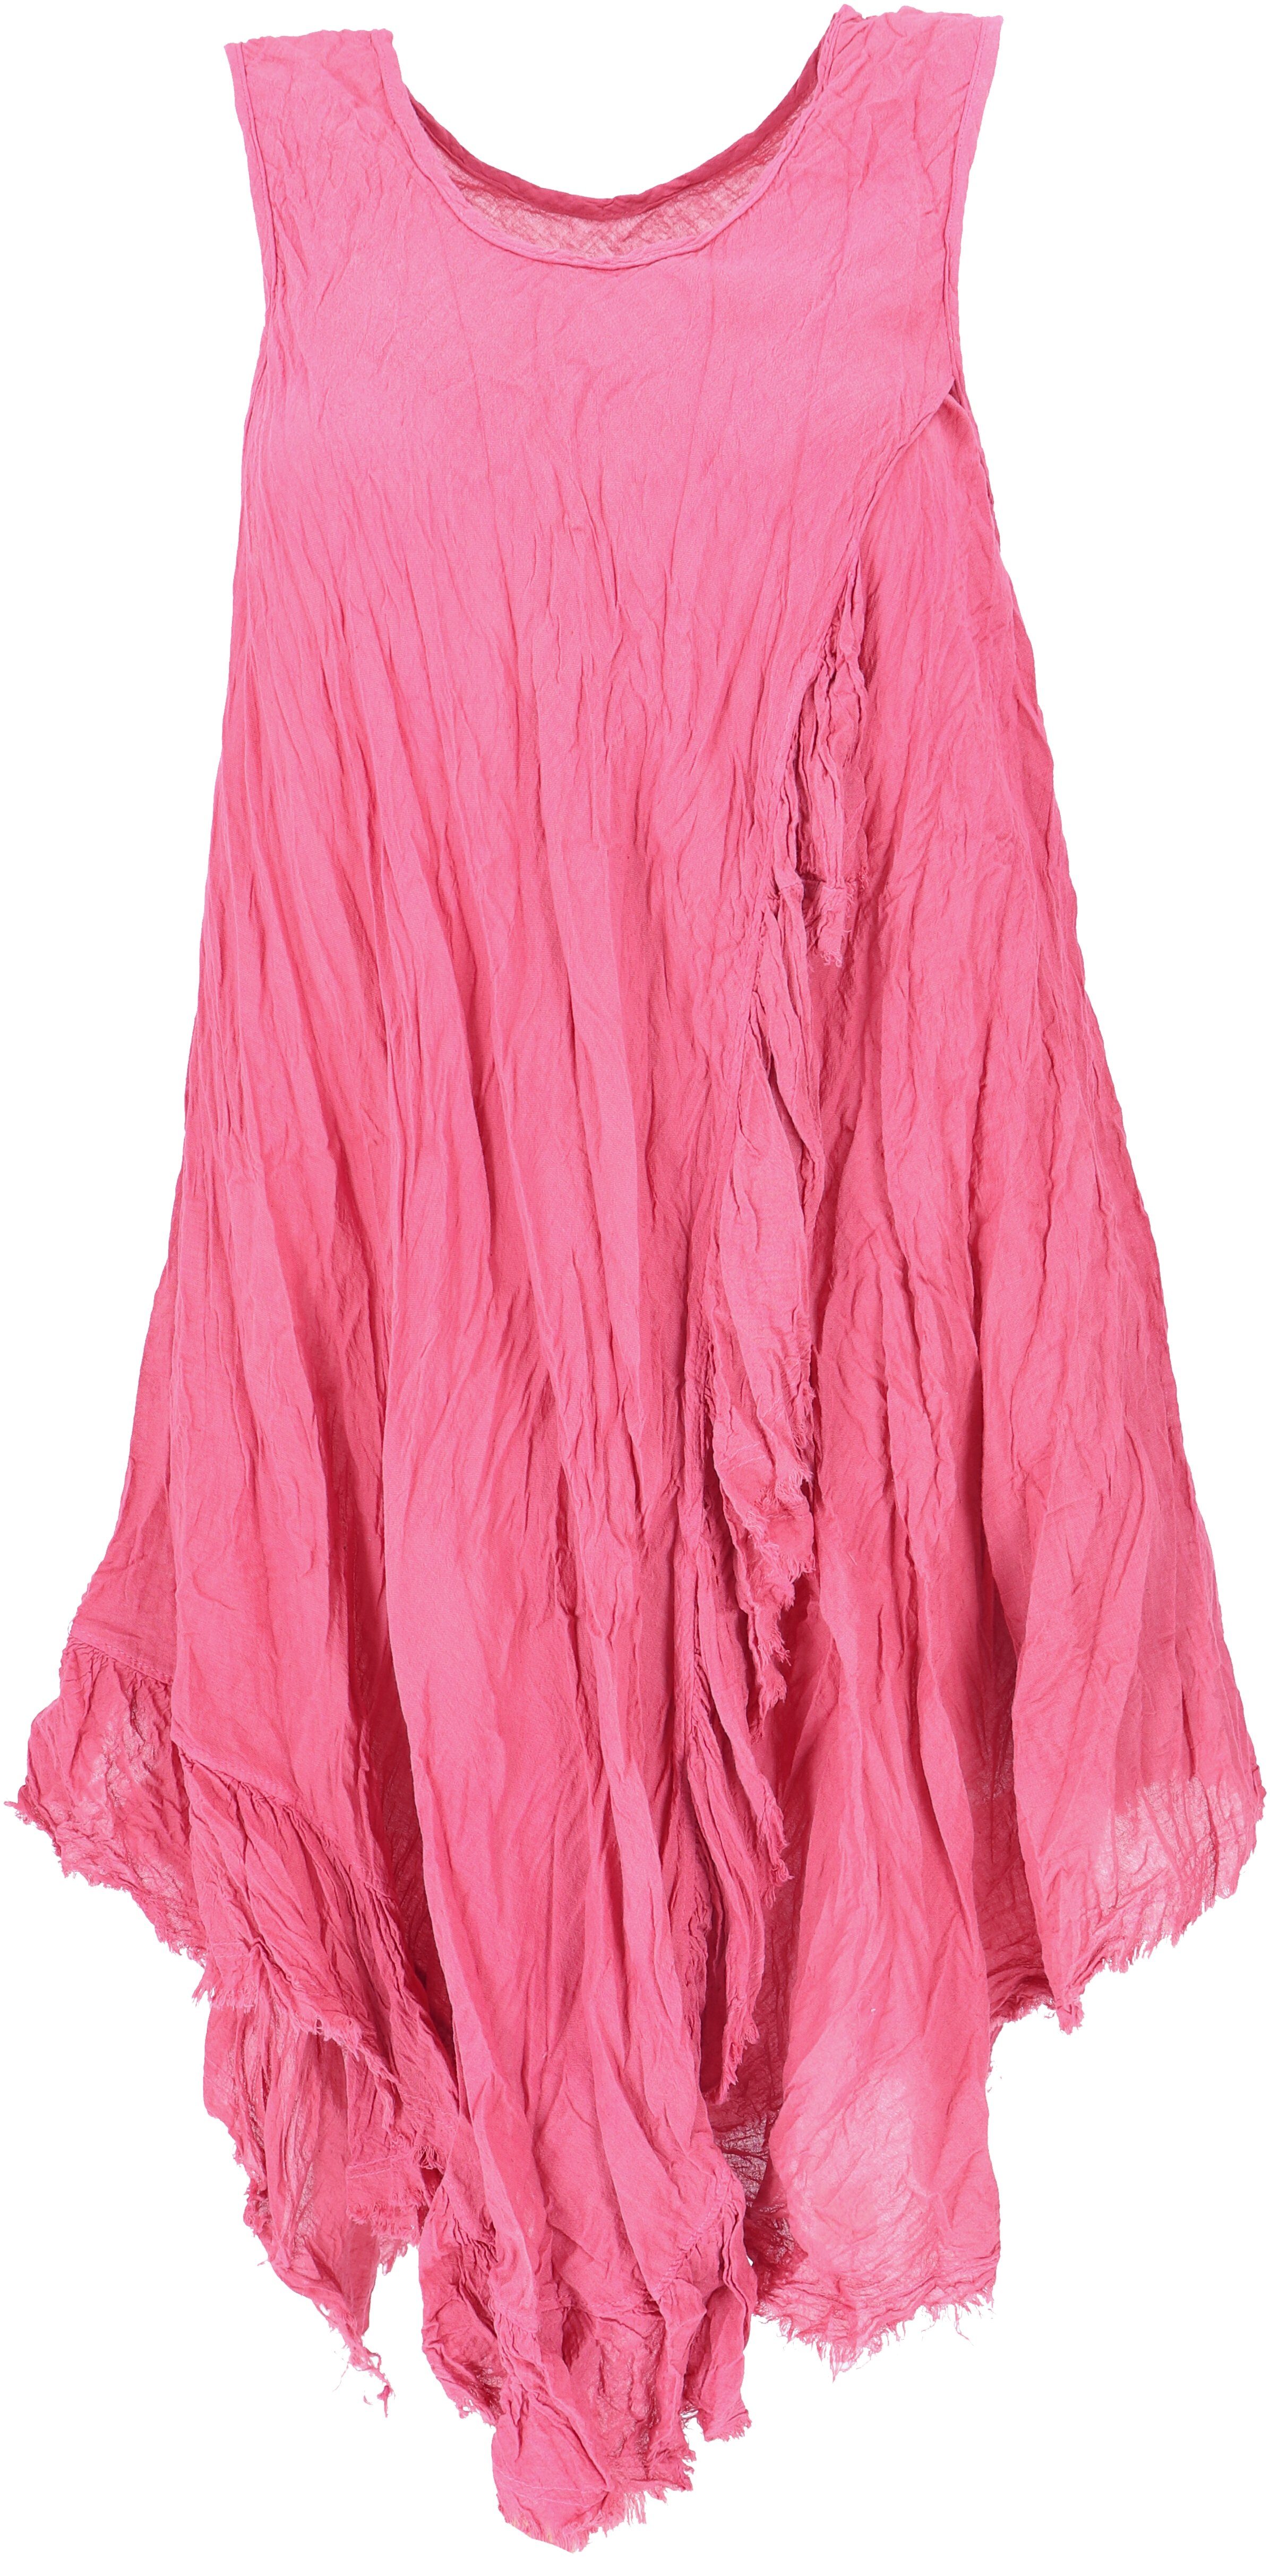 Boho Guru-Shop luftiges Midikleid alternative Bekleidung pink Krinkelkleid,.. Sommerkleid,